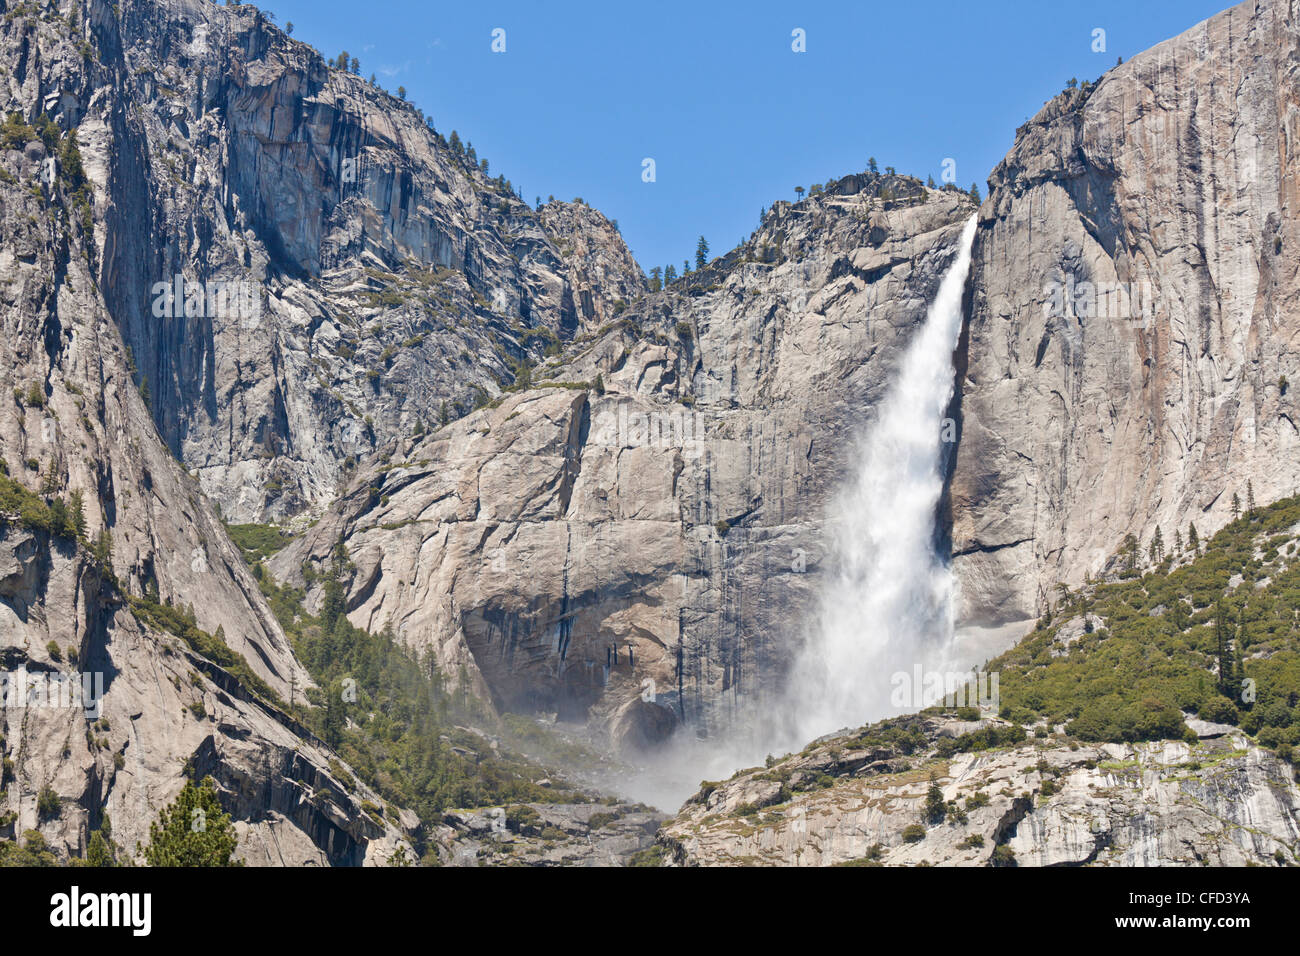 Superiore di Yosemite Falls, Yosemite Valley, del Parco Nazionale Yosemite, Sito Patrimonio Mondiale dell'Unesco, Sierra Nevada, in California, Stati Uniti d'America Foto Stock